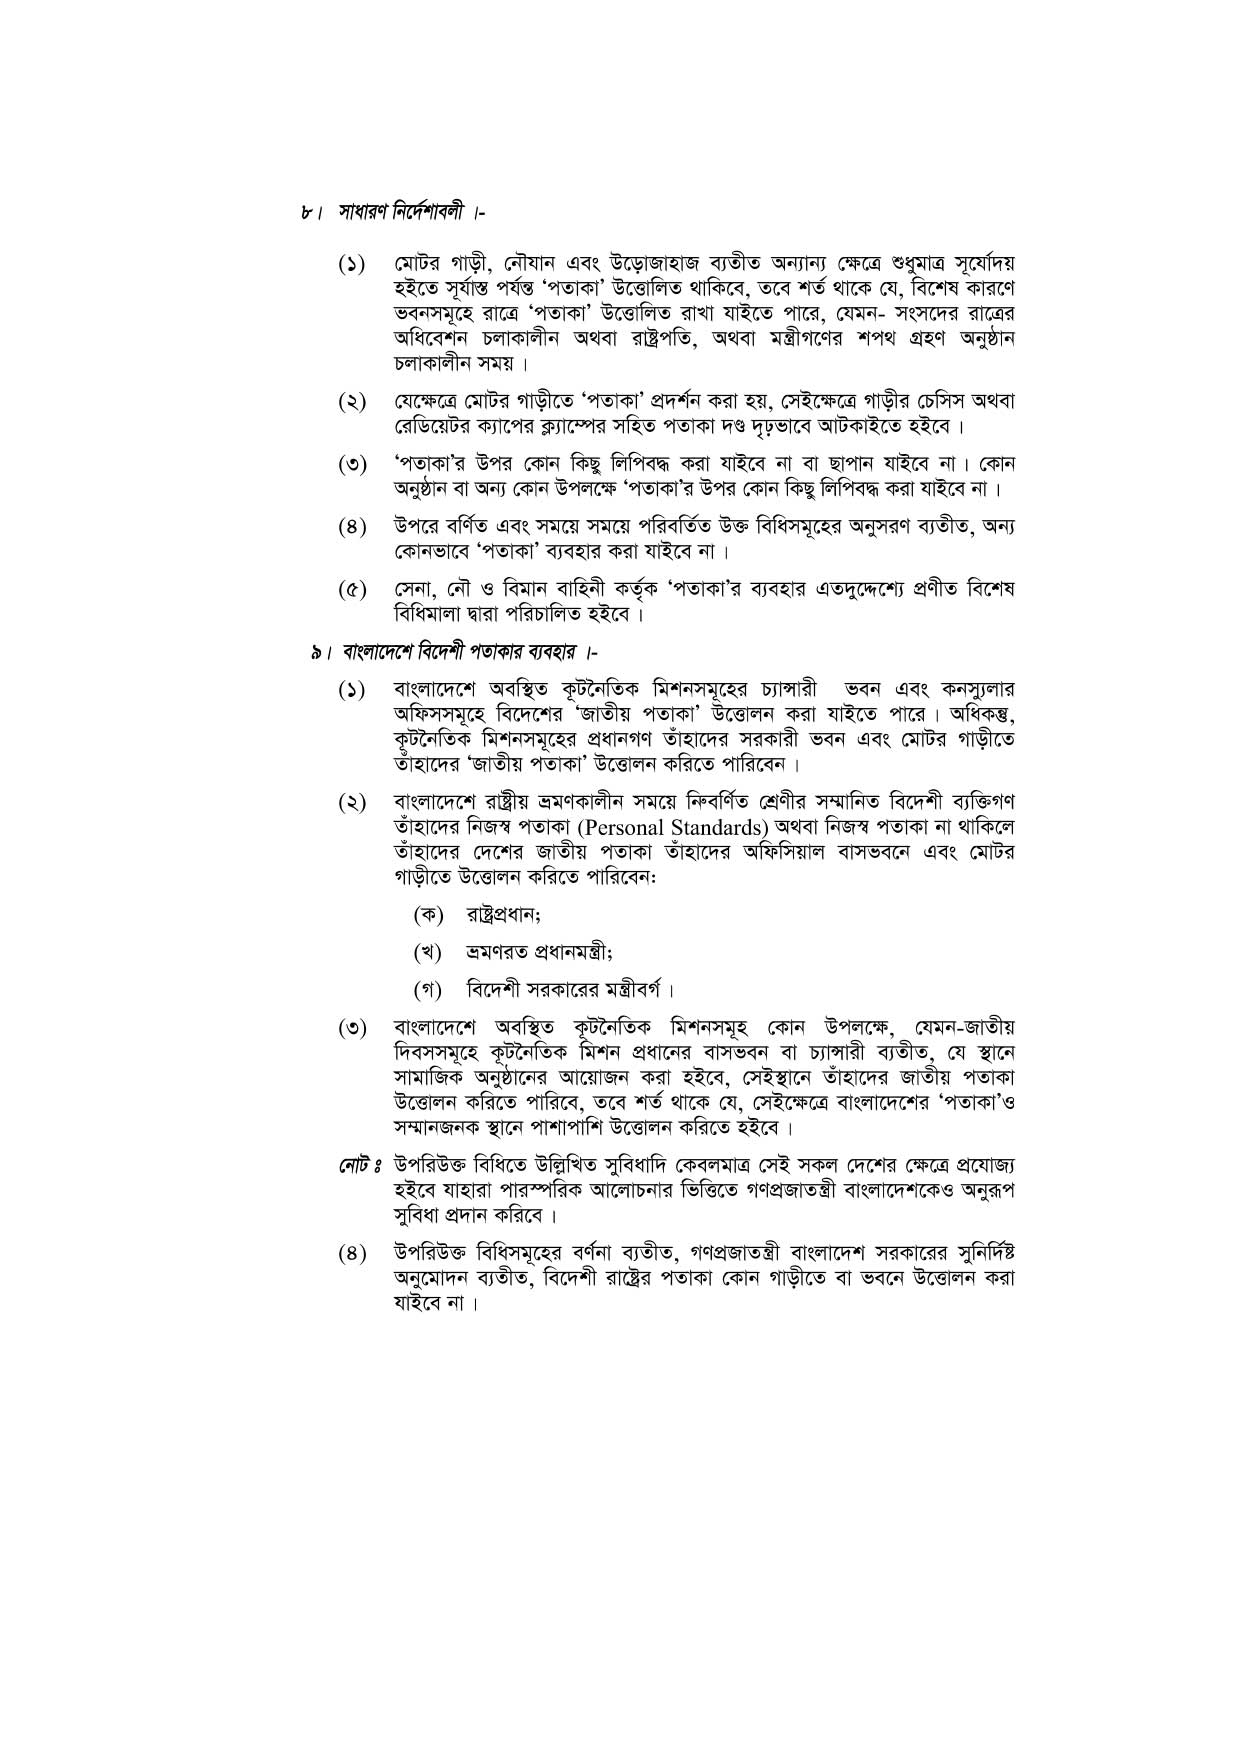 জাতীয় পতাকা বিধিমালা-১৯৭২ (সংশোধিত ২০১০) pdf